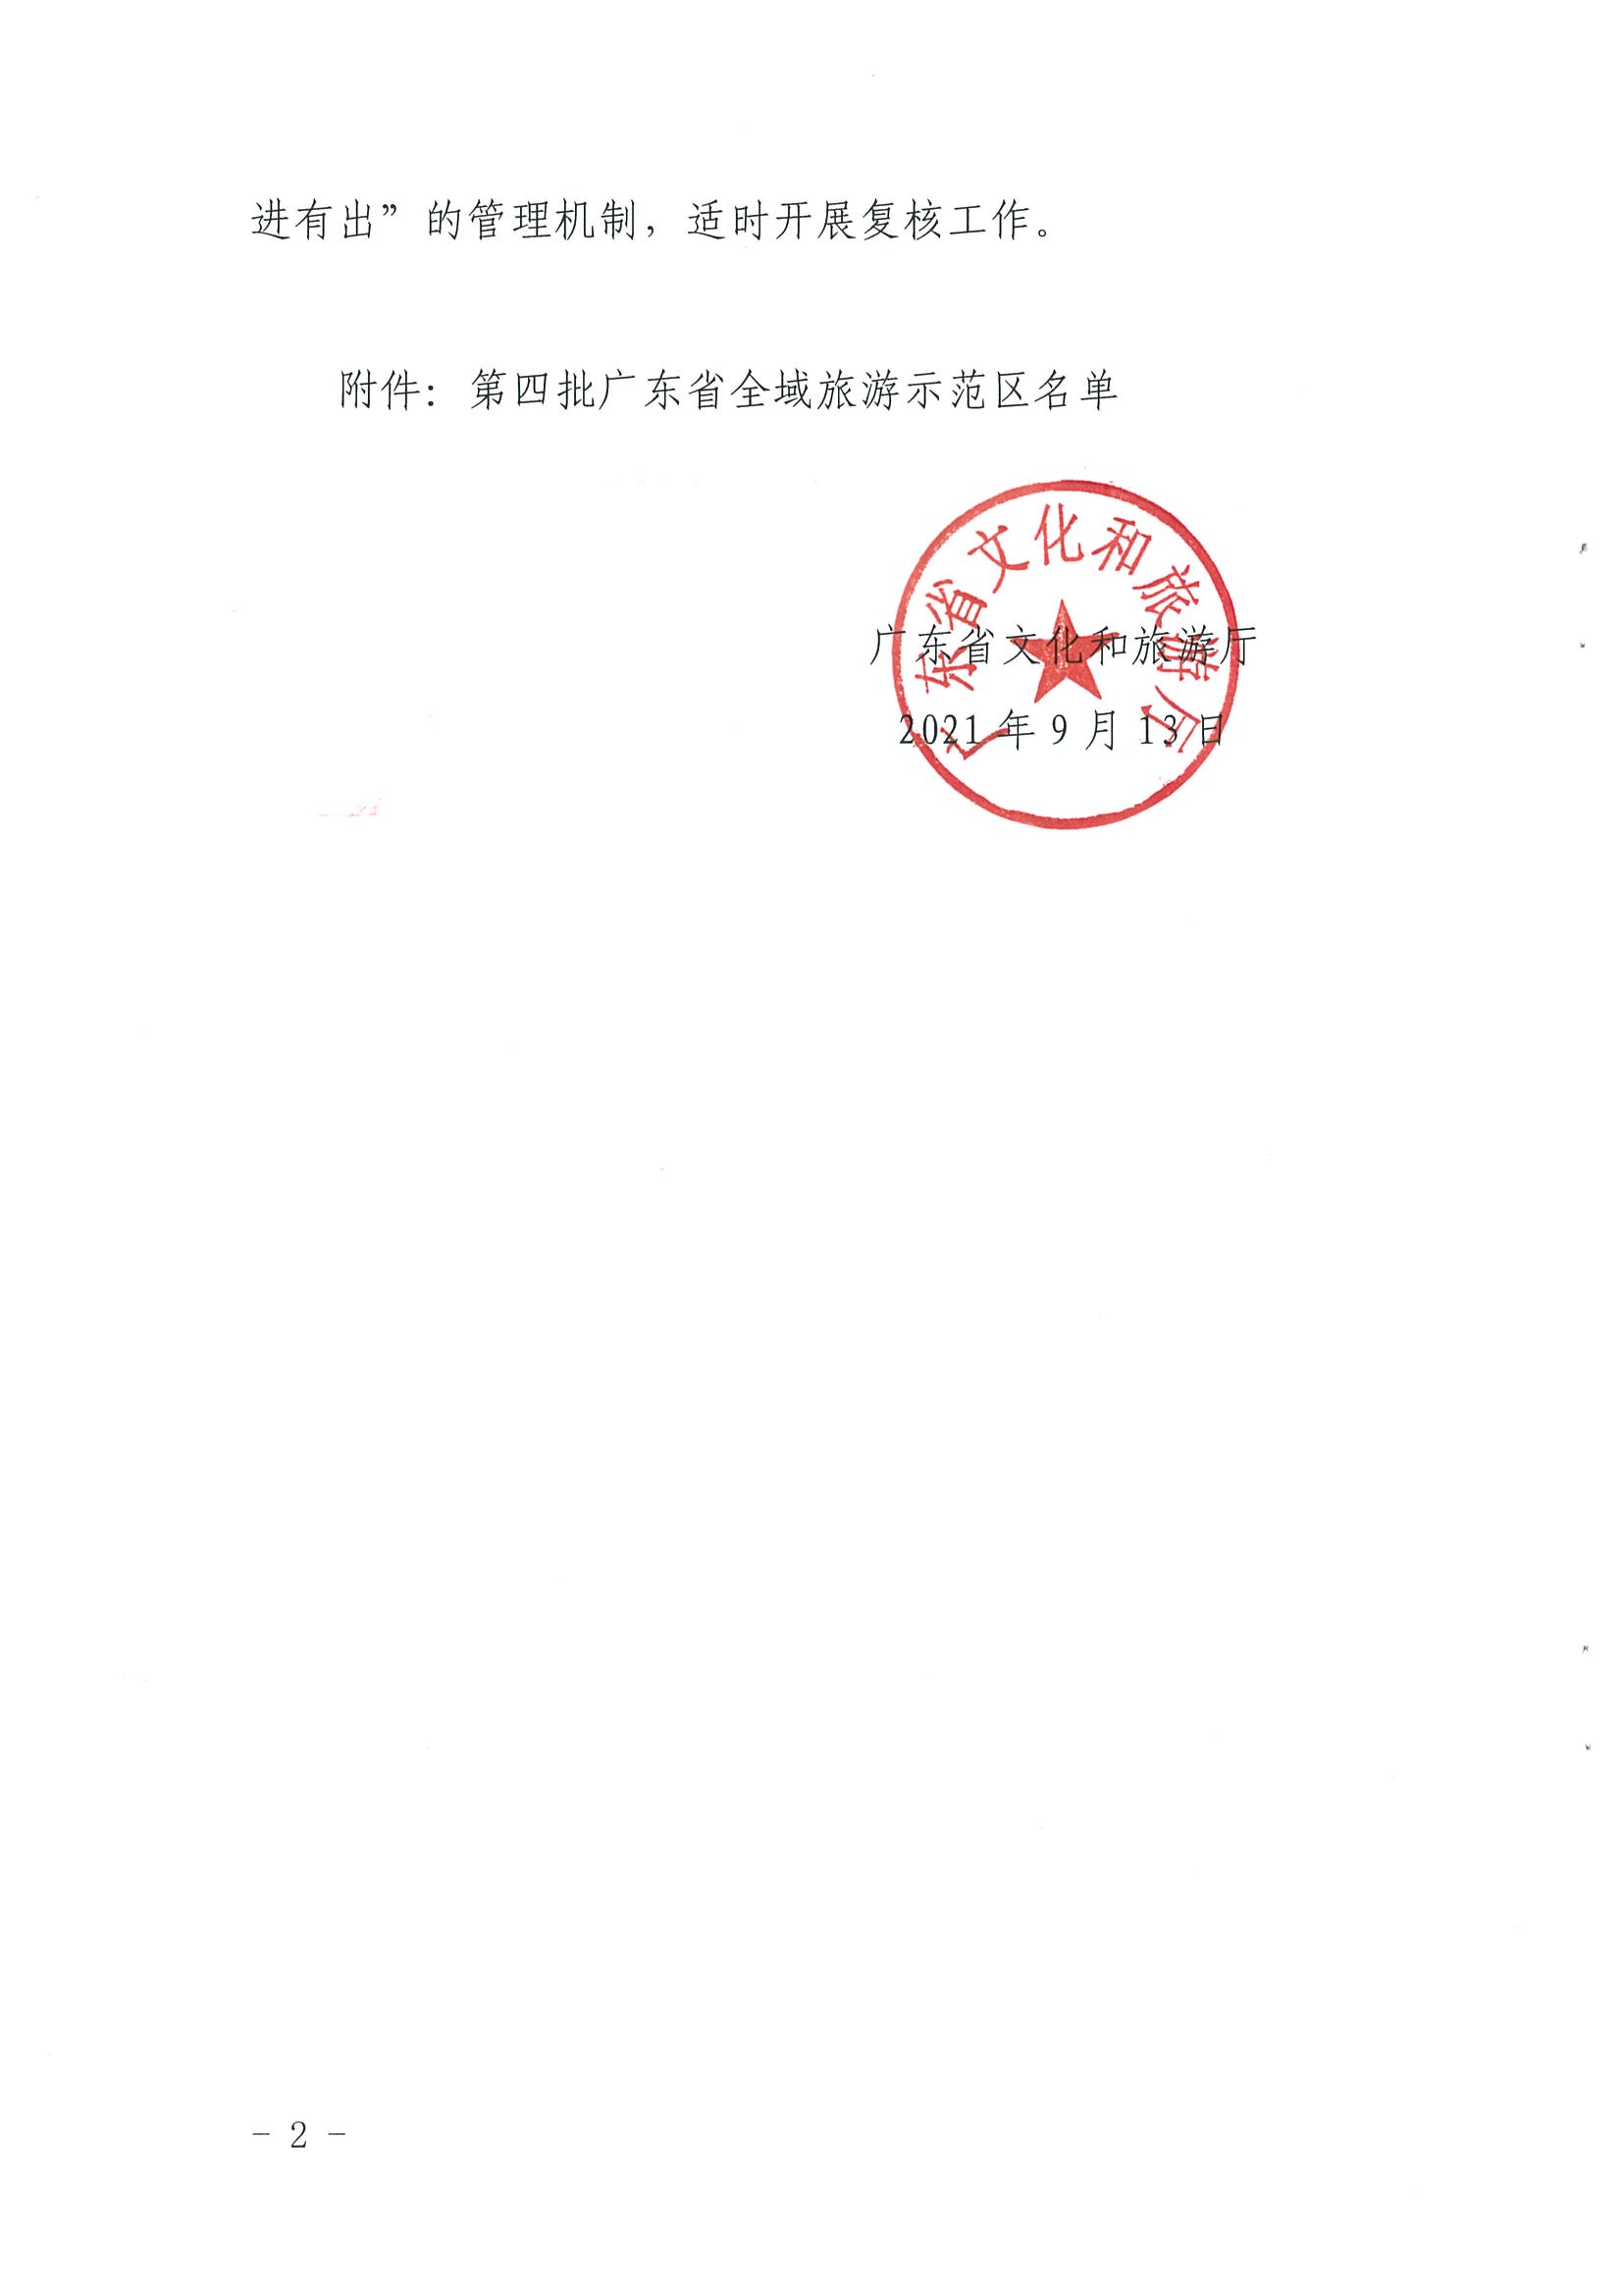 广东省文化和旅游厅关于公布第四批广东省全域旅游示范区名单的通知_页面_2.jpg